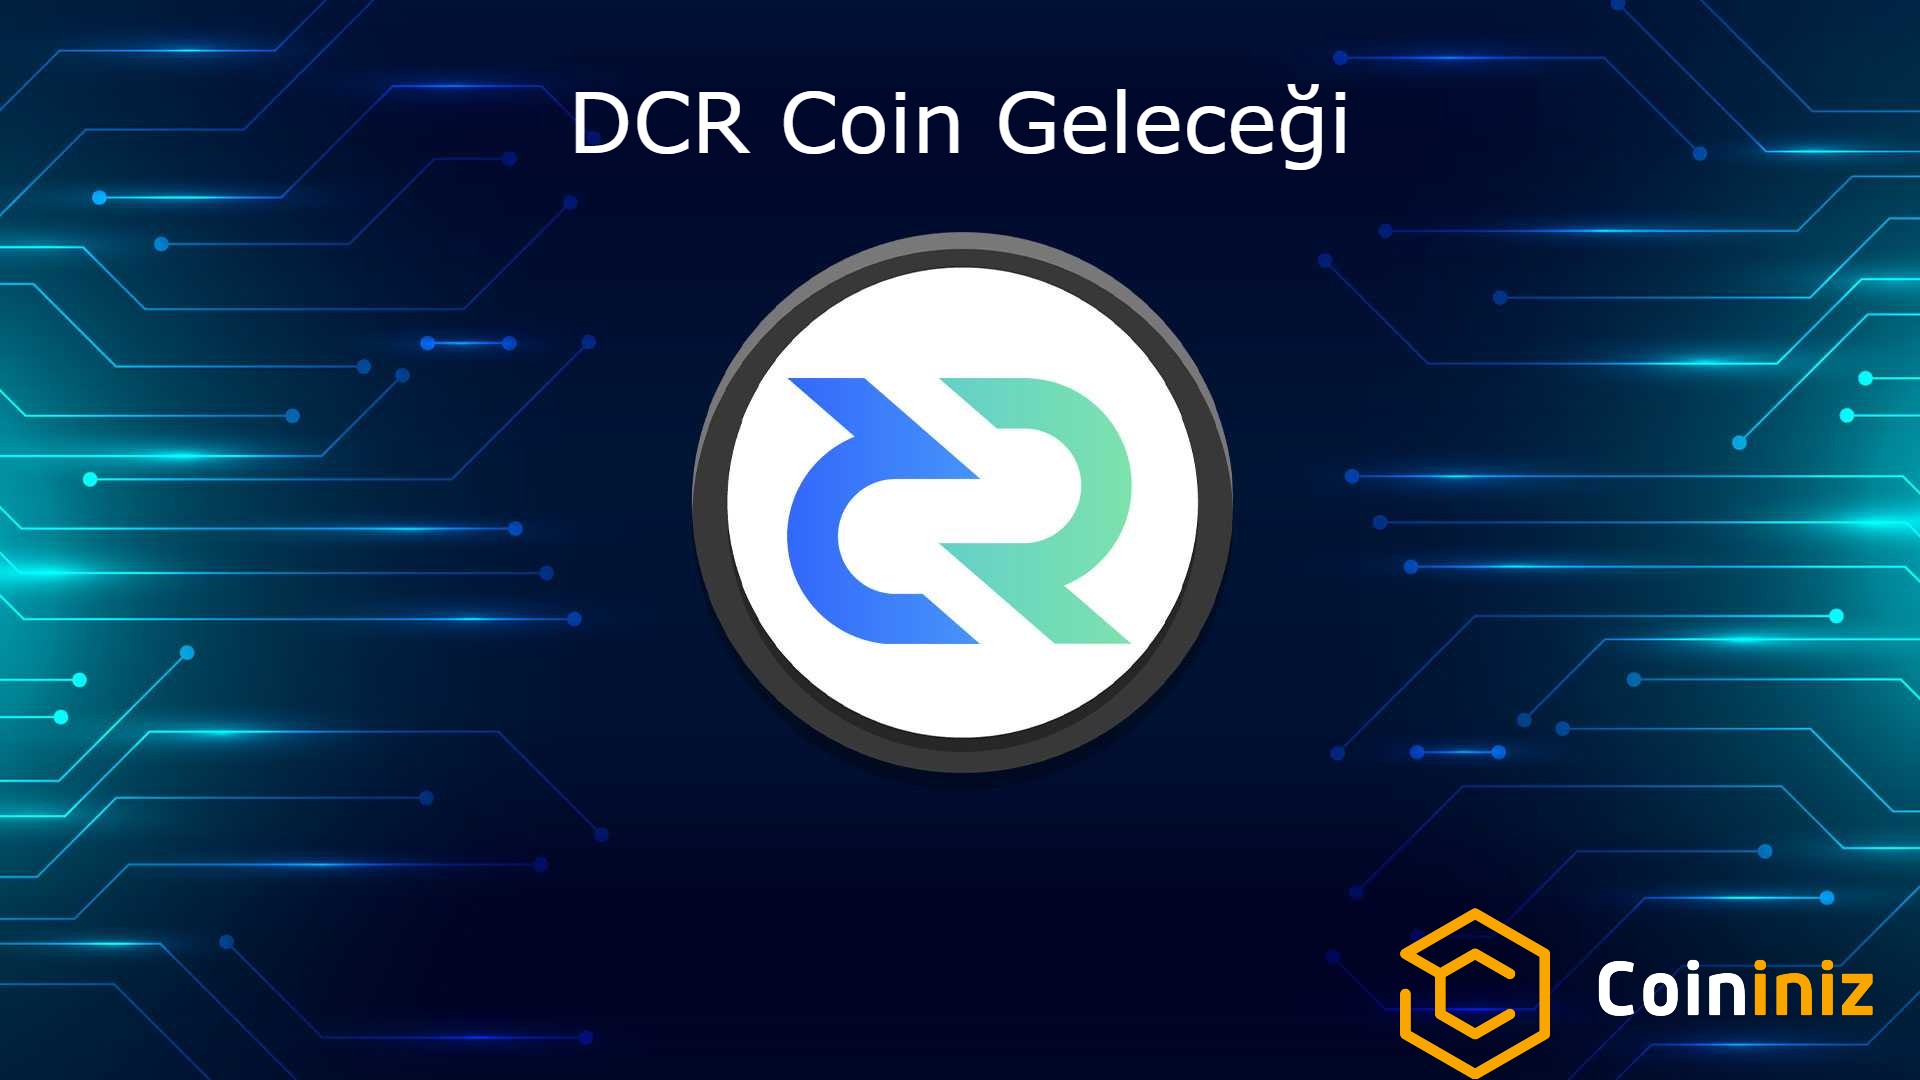 DCR Coin Geleceği